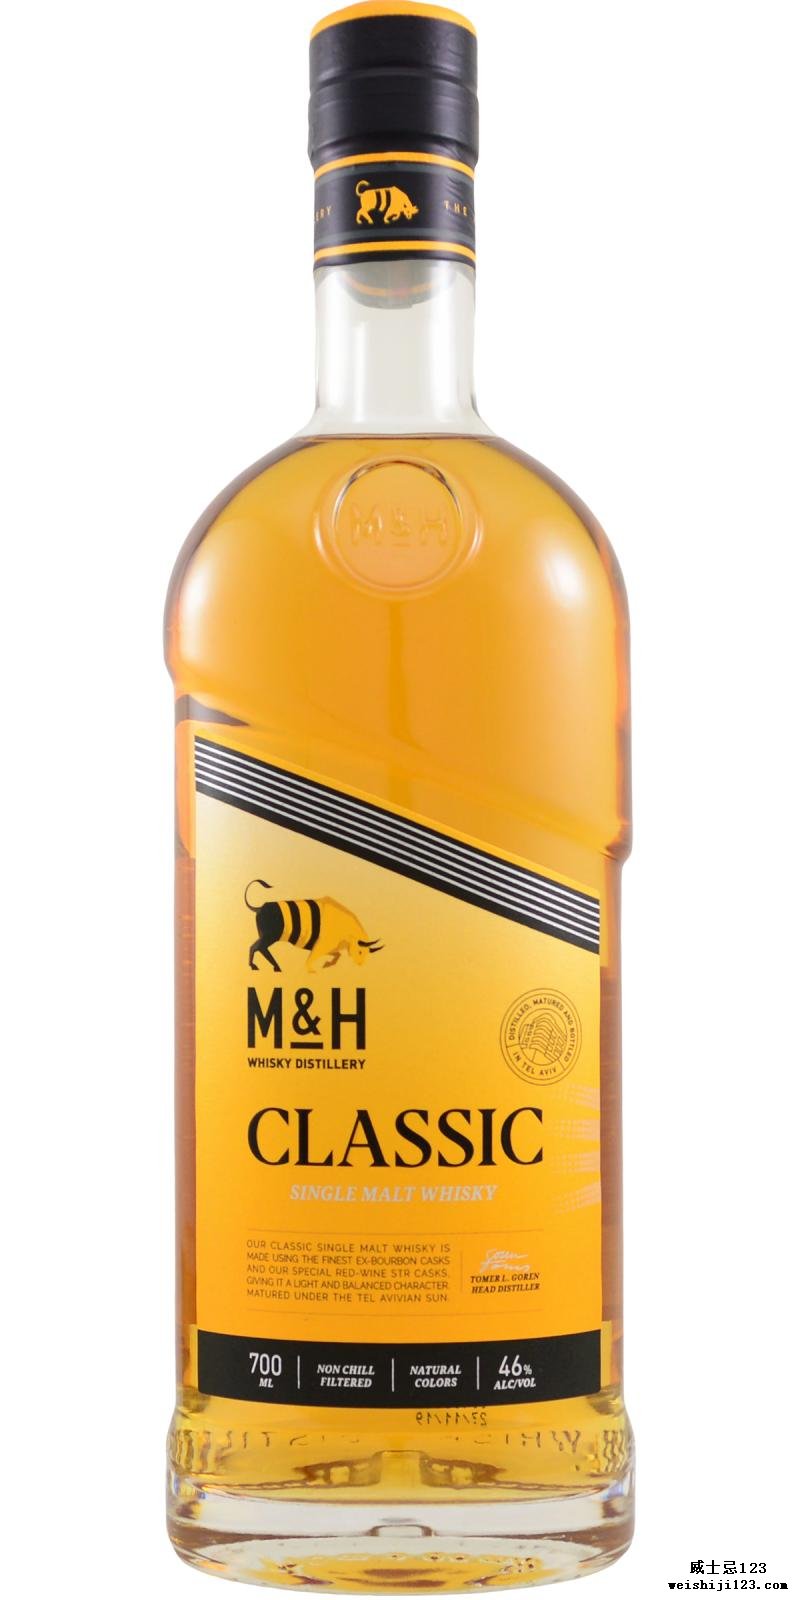 M&H Classic